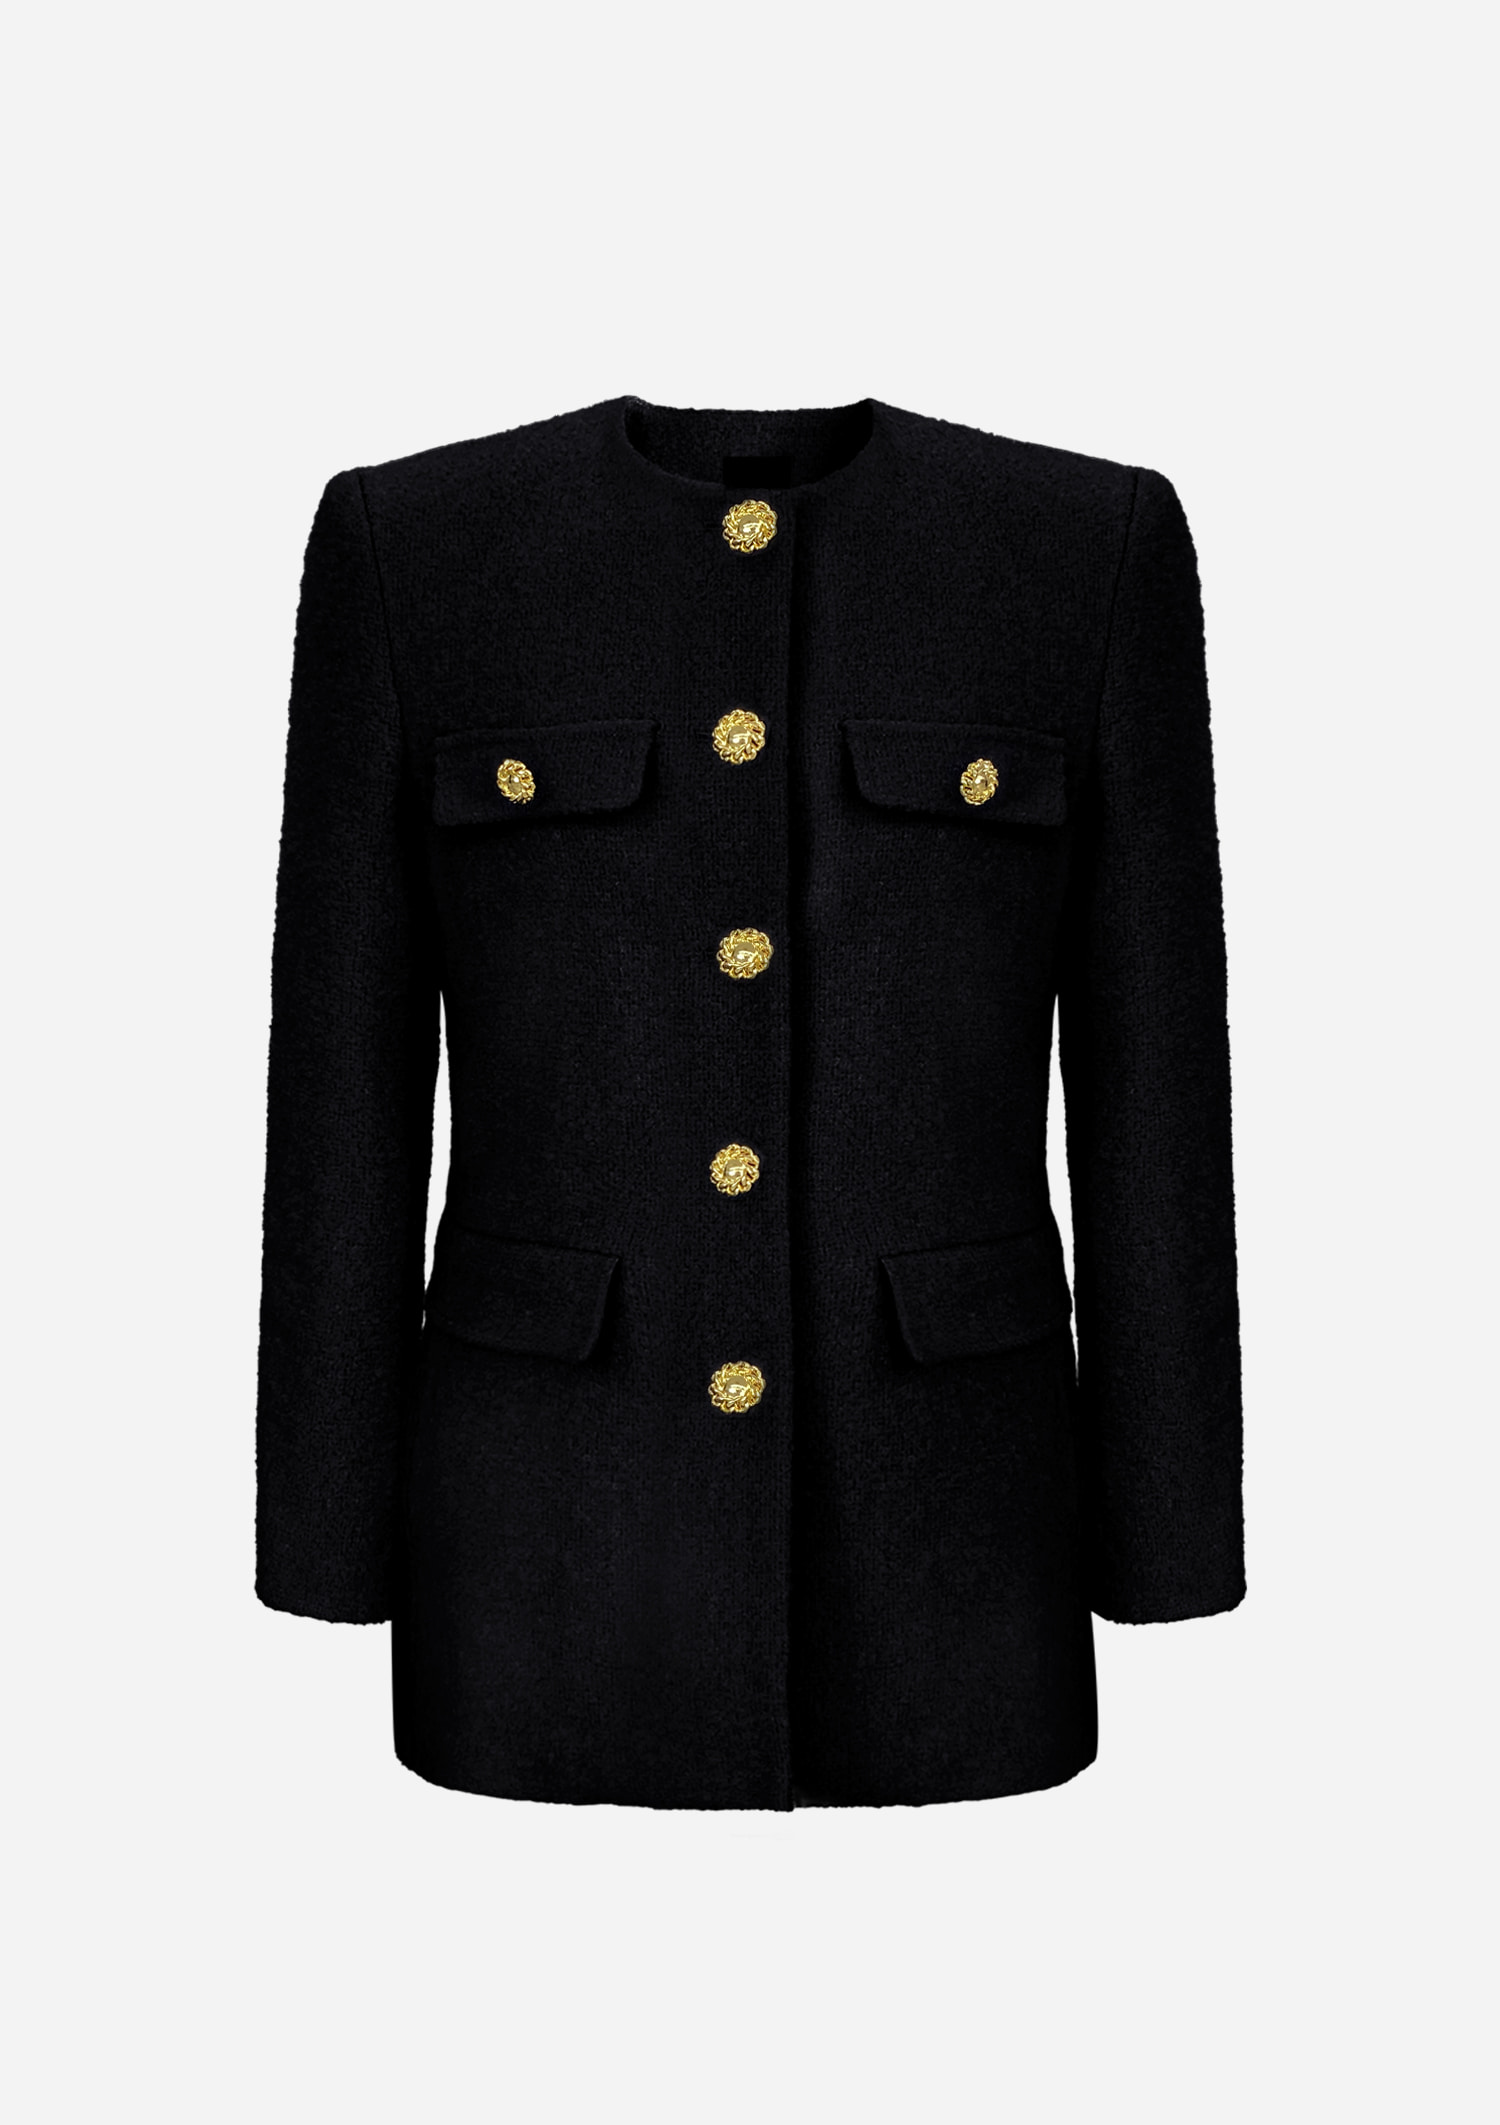 bouclé bold button black jacket